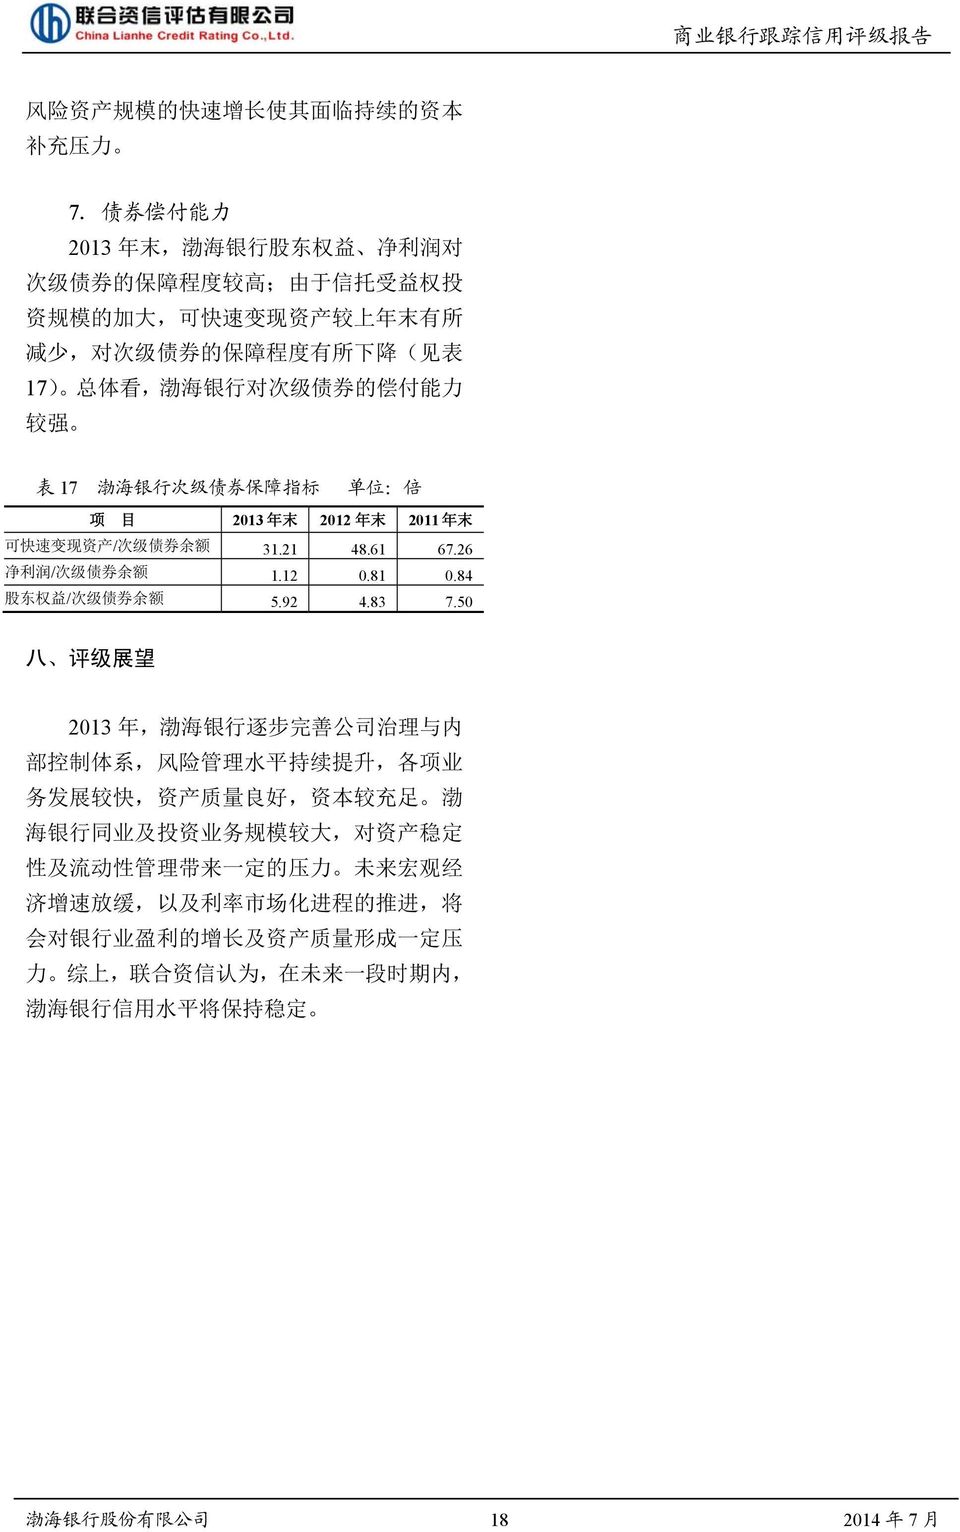 能 力 较 强 表 17 渤 海 银 行 次 级 债 券 保 障 指 标 单 位 : 倍 项 目 2013 年 末 2012 年 末 2011 年 末 可 快 速 变 现 资 产 / 次 级 债 券 余 额 31.21 48.61 67.26 净 利 润 / 次 级 债 券 余 额 1.12 0.81 0.84 股 东 权 益 / 次 级 债 券 余 额 5.92 4.83 7.